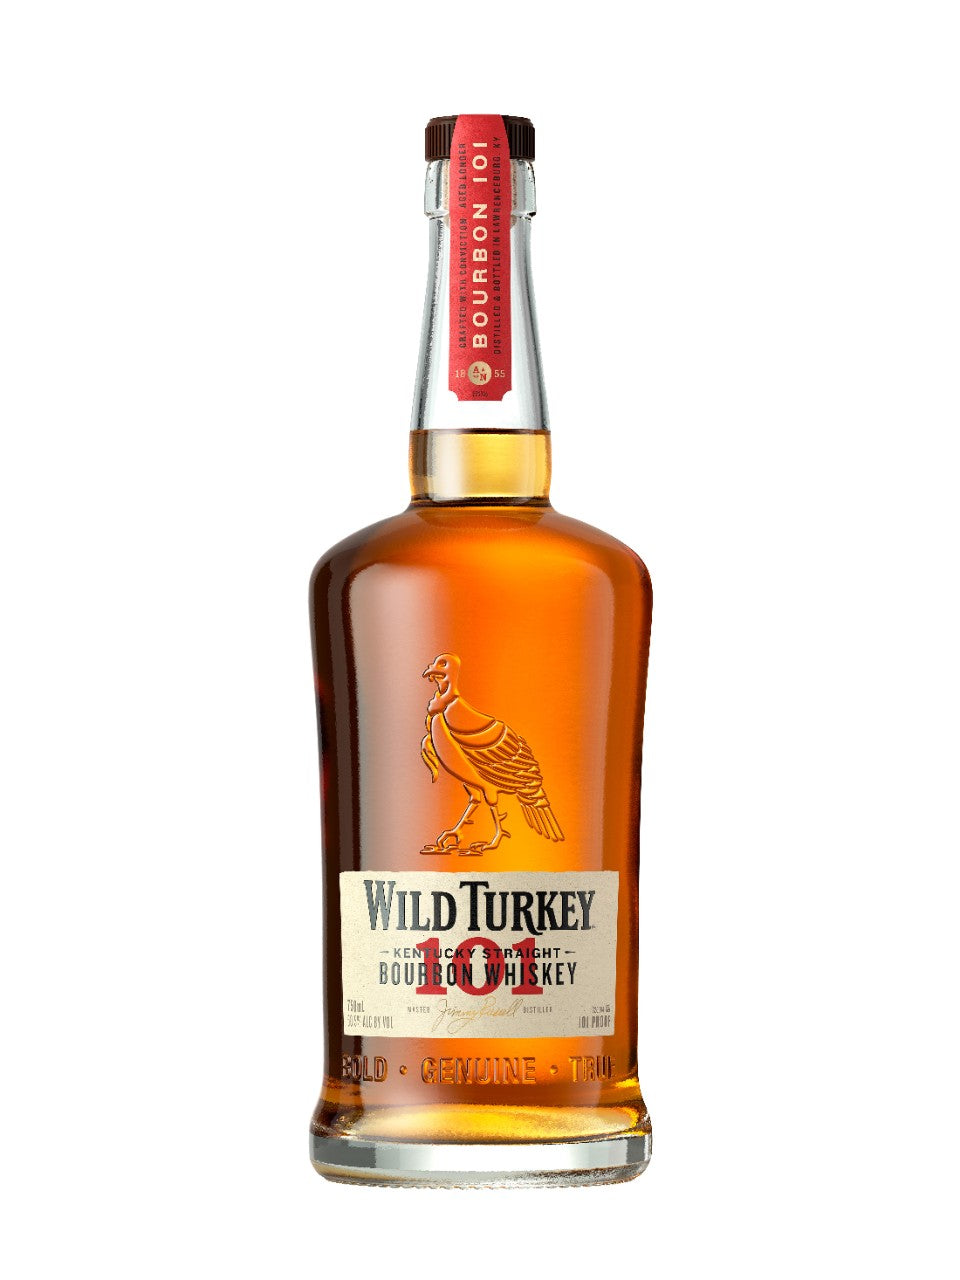 Wild Turkey 101 Kentucky Straight Bourbon 750 mL bottle